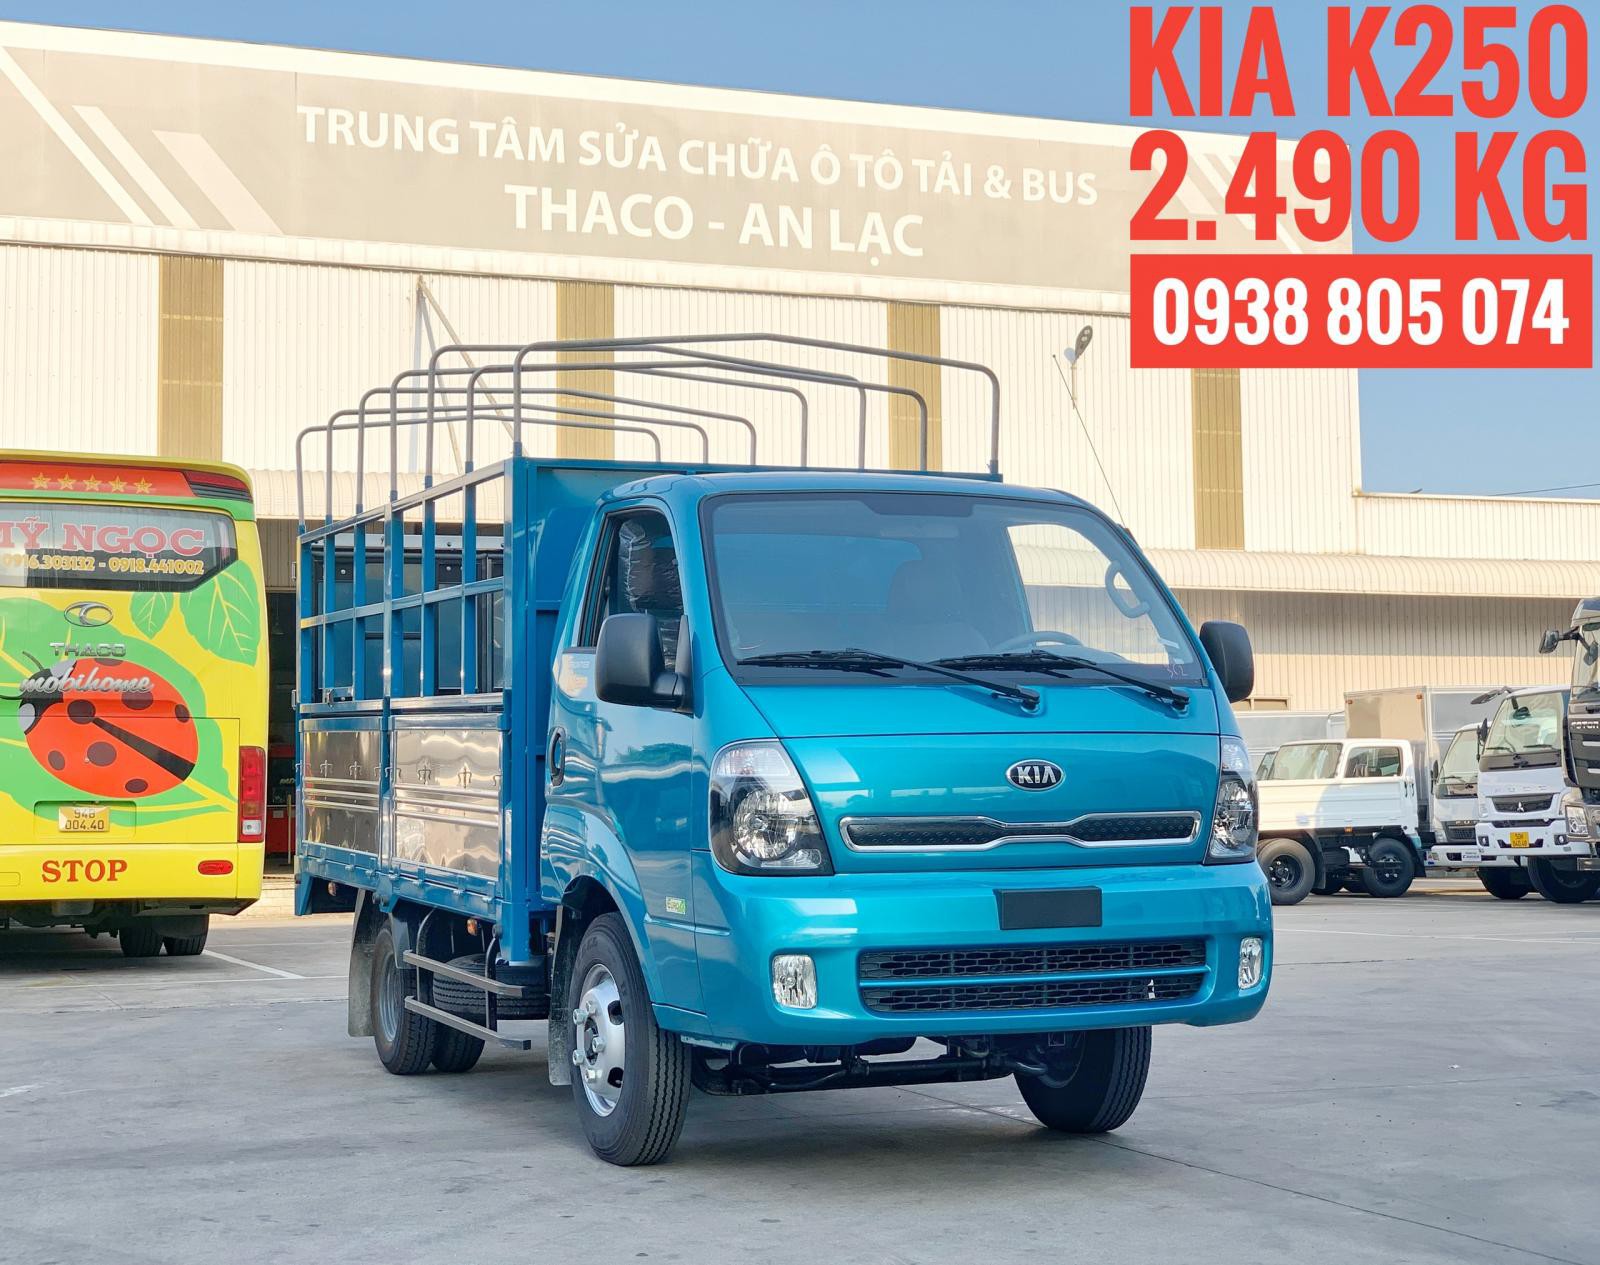 Xe tải Kia K250 - động cơ Hyundai - tải trọng 2,4 tấn - thay thế K3000S và K165